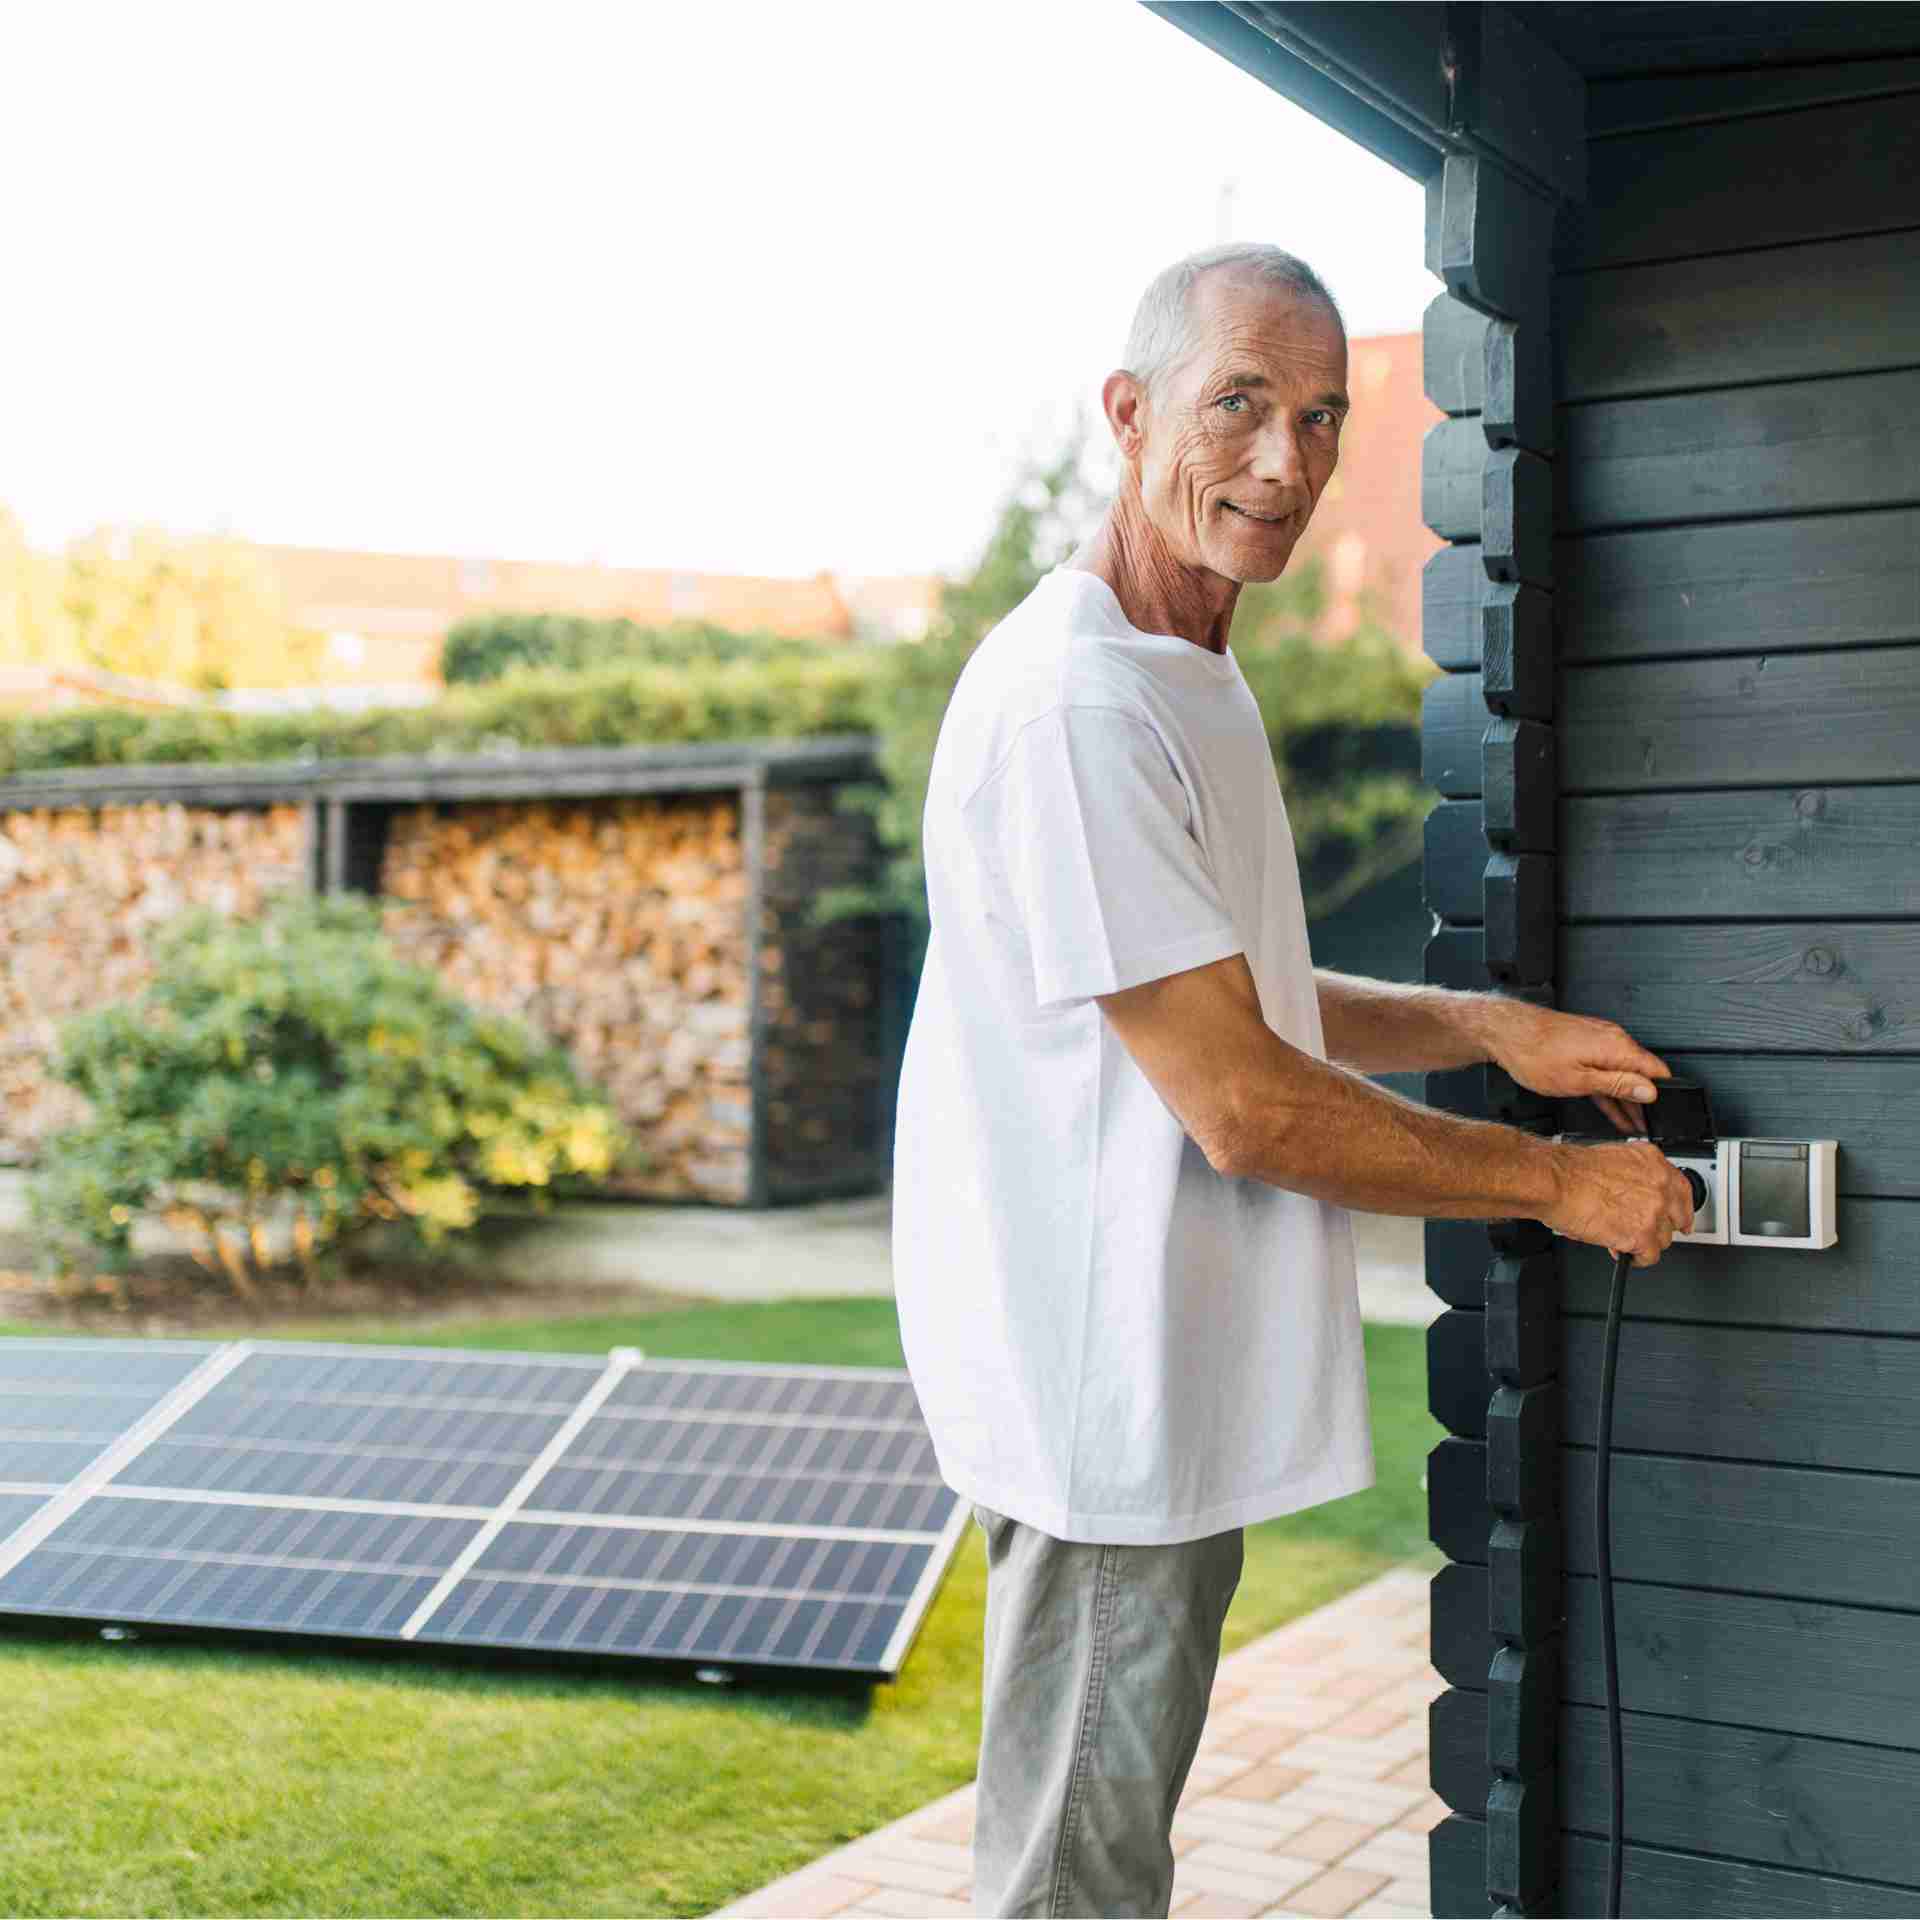 Mann installiert eine Solaranlage im Garten.